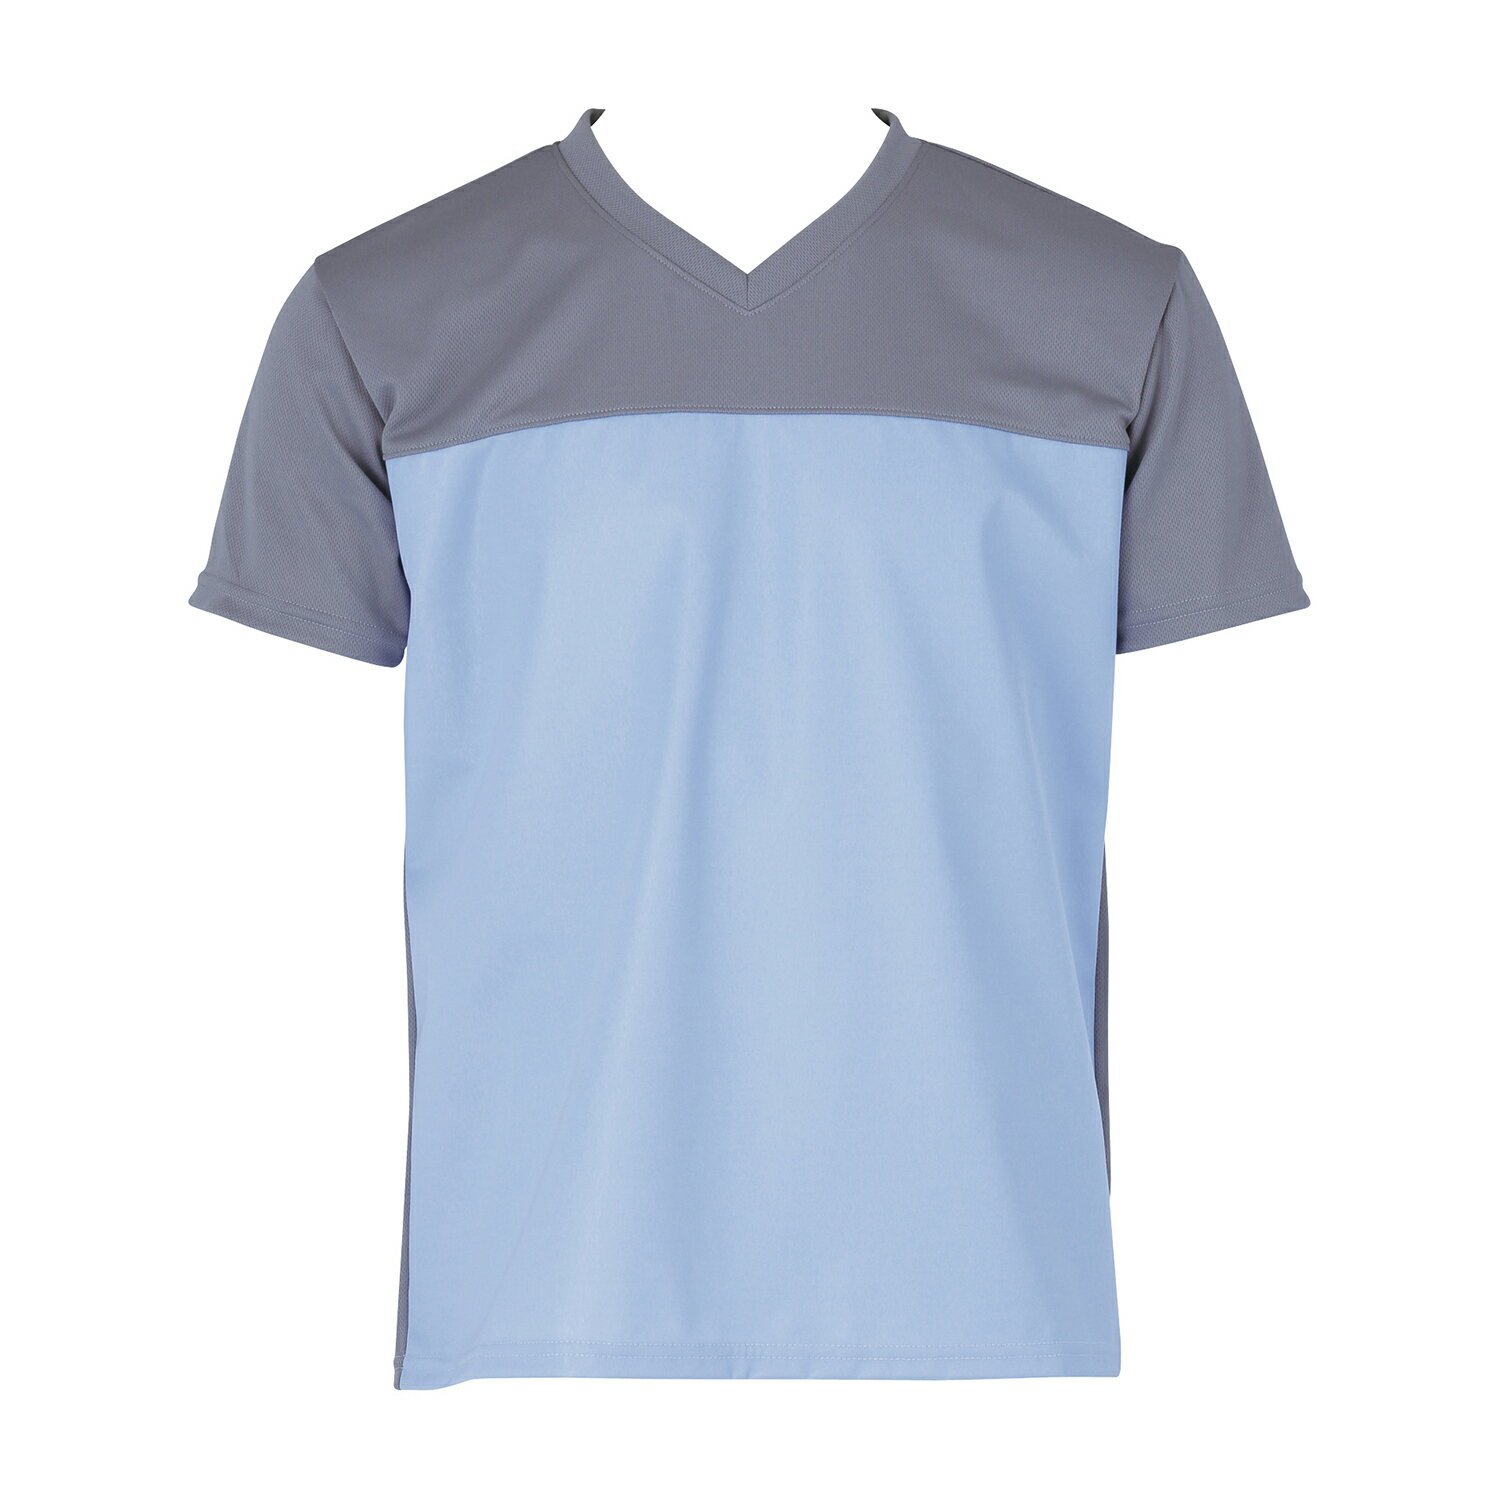 フットマーク 入浴介護Tシャツ LL ブルー フットマーク403340(LL)